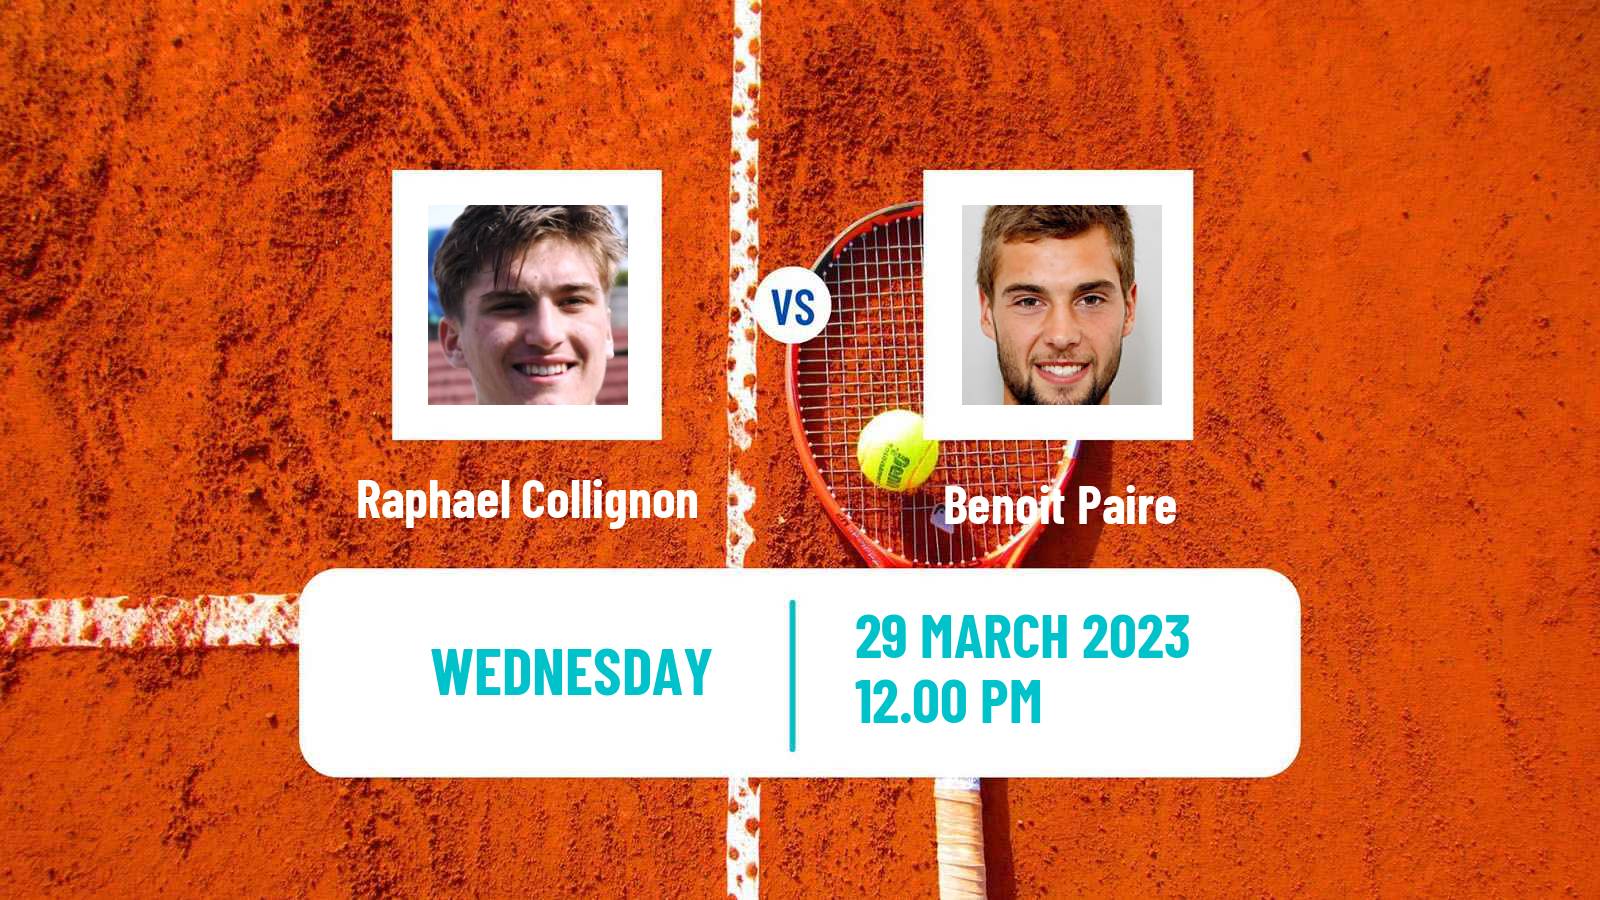 Tennis ATP Challenger Raphael Collignon - Benoit Paire